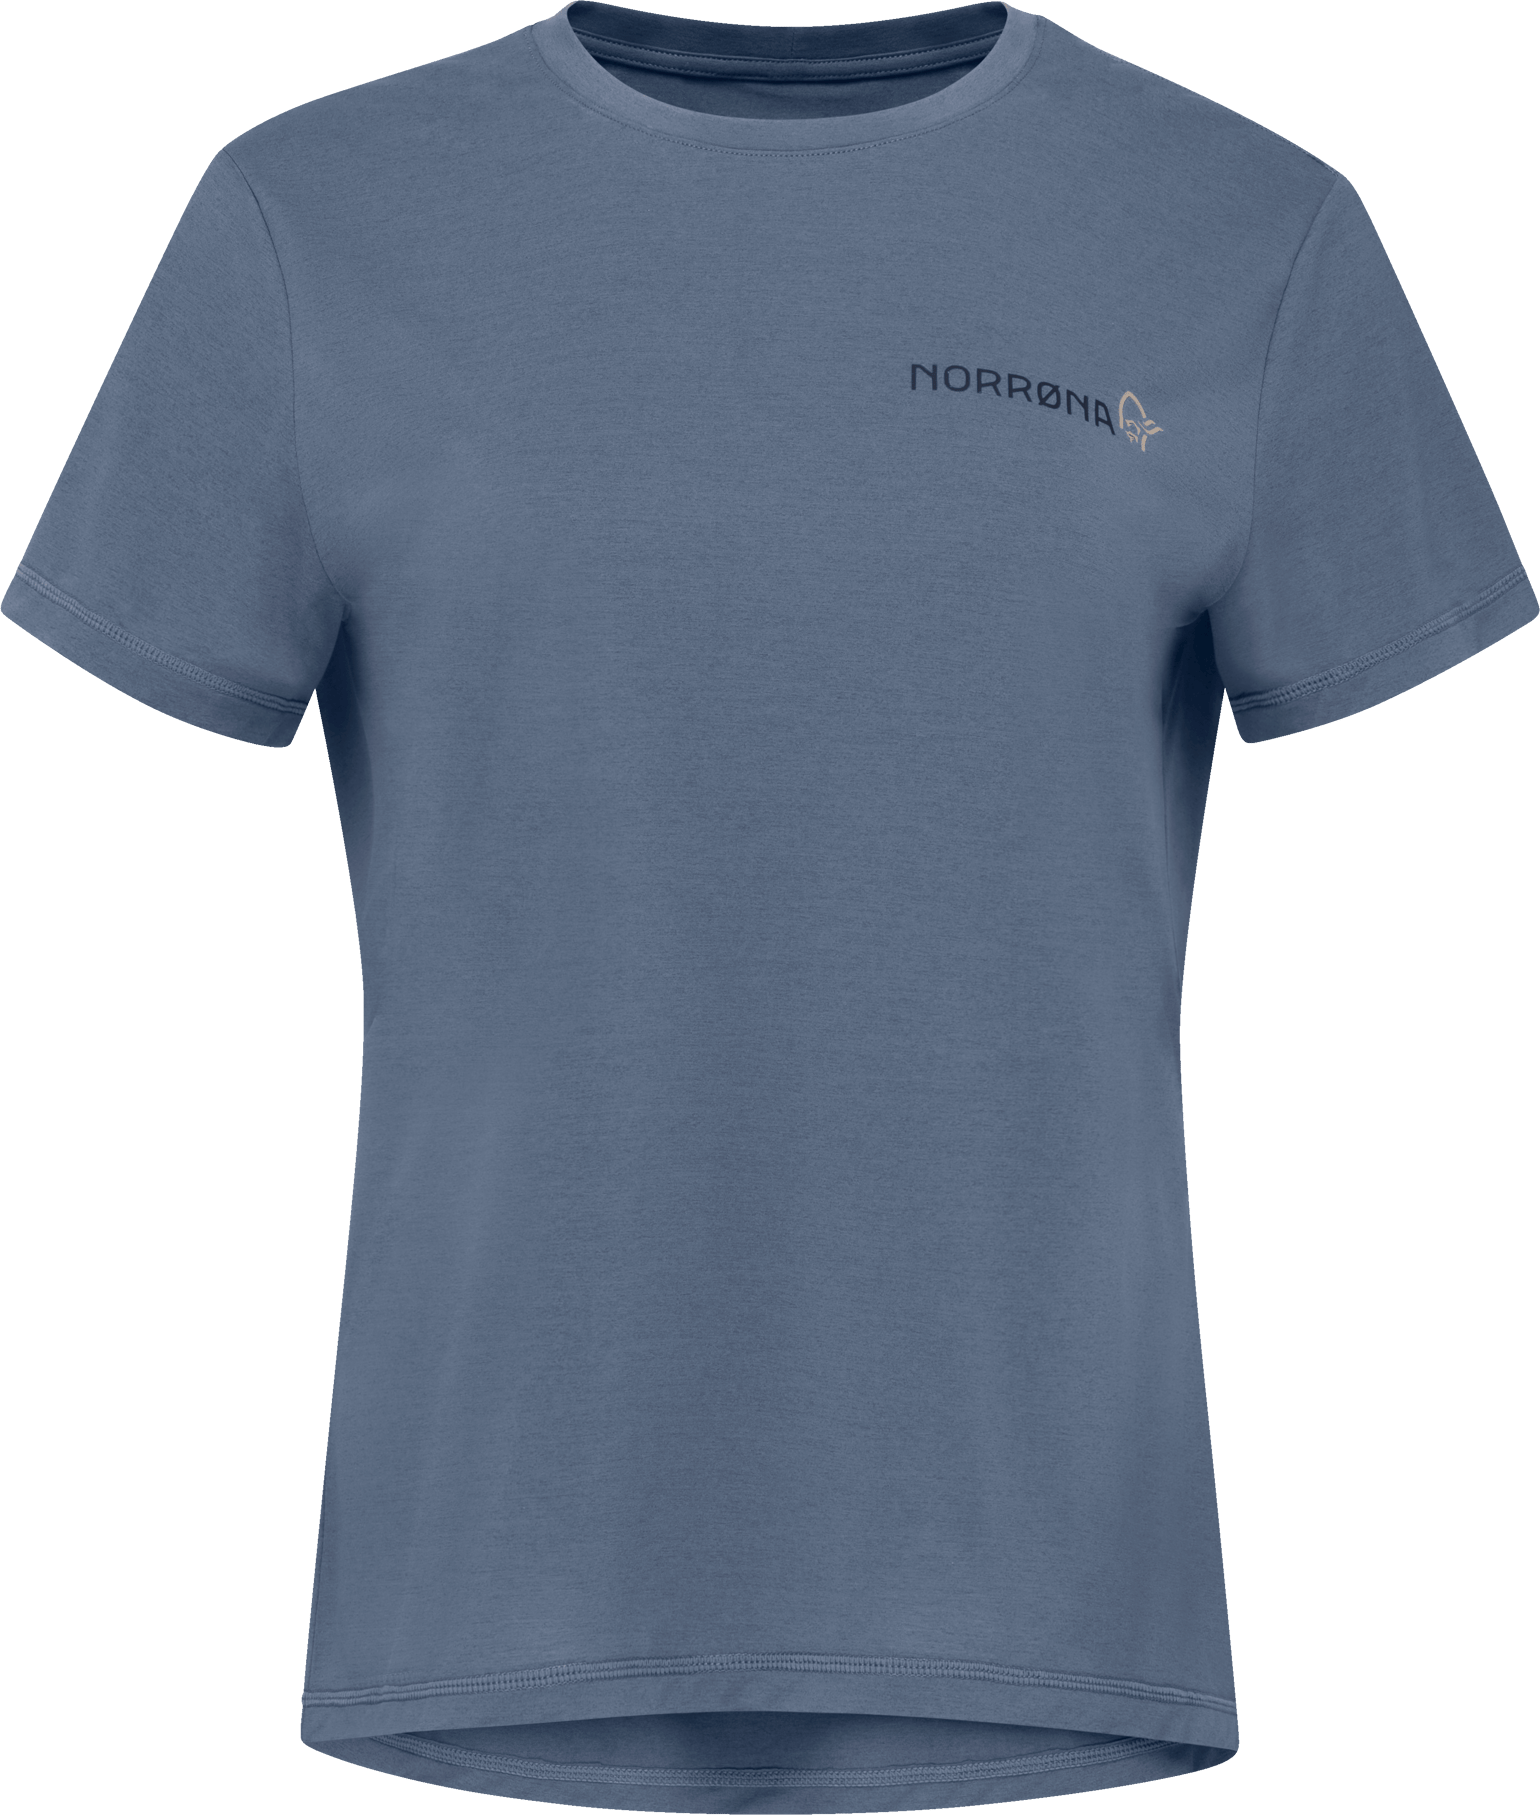 Norrøna Women's Femund Tech T-Shirt Vintage Indigo